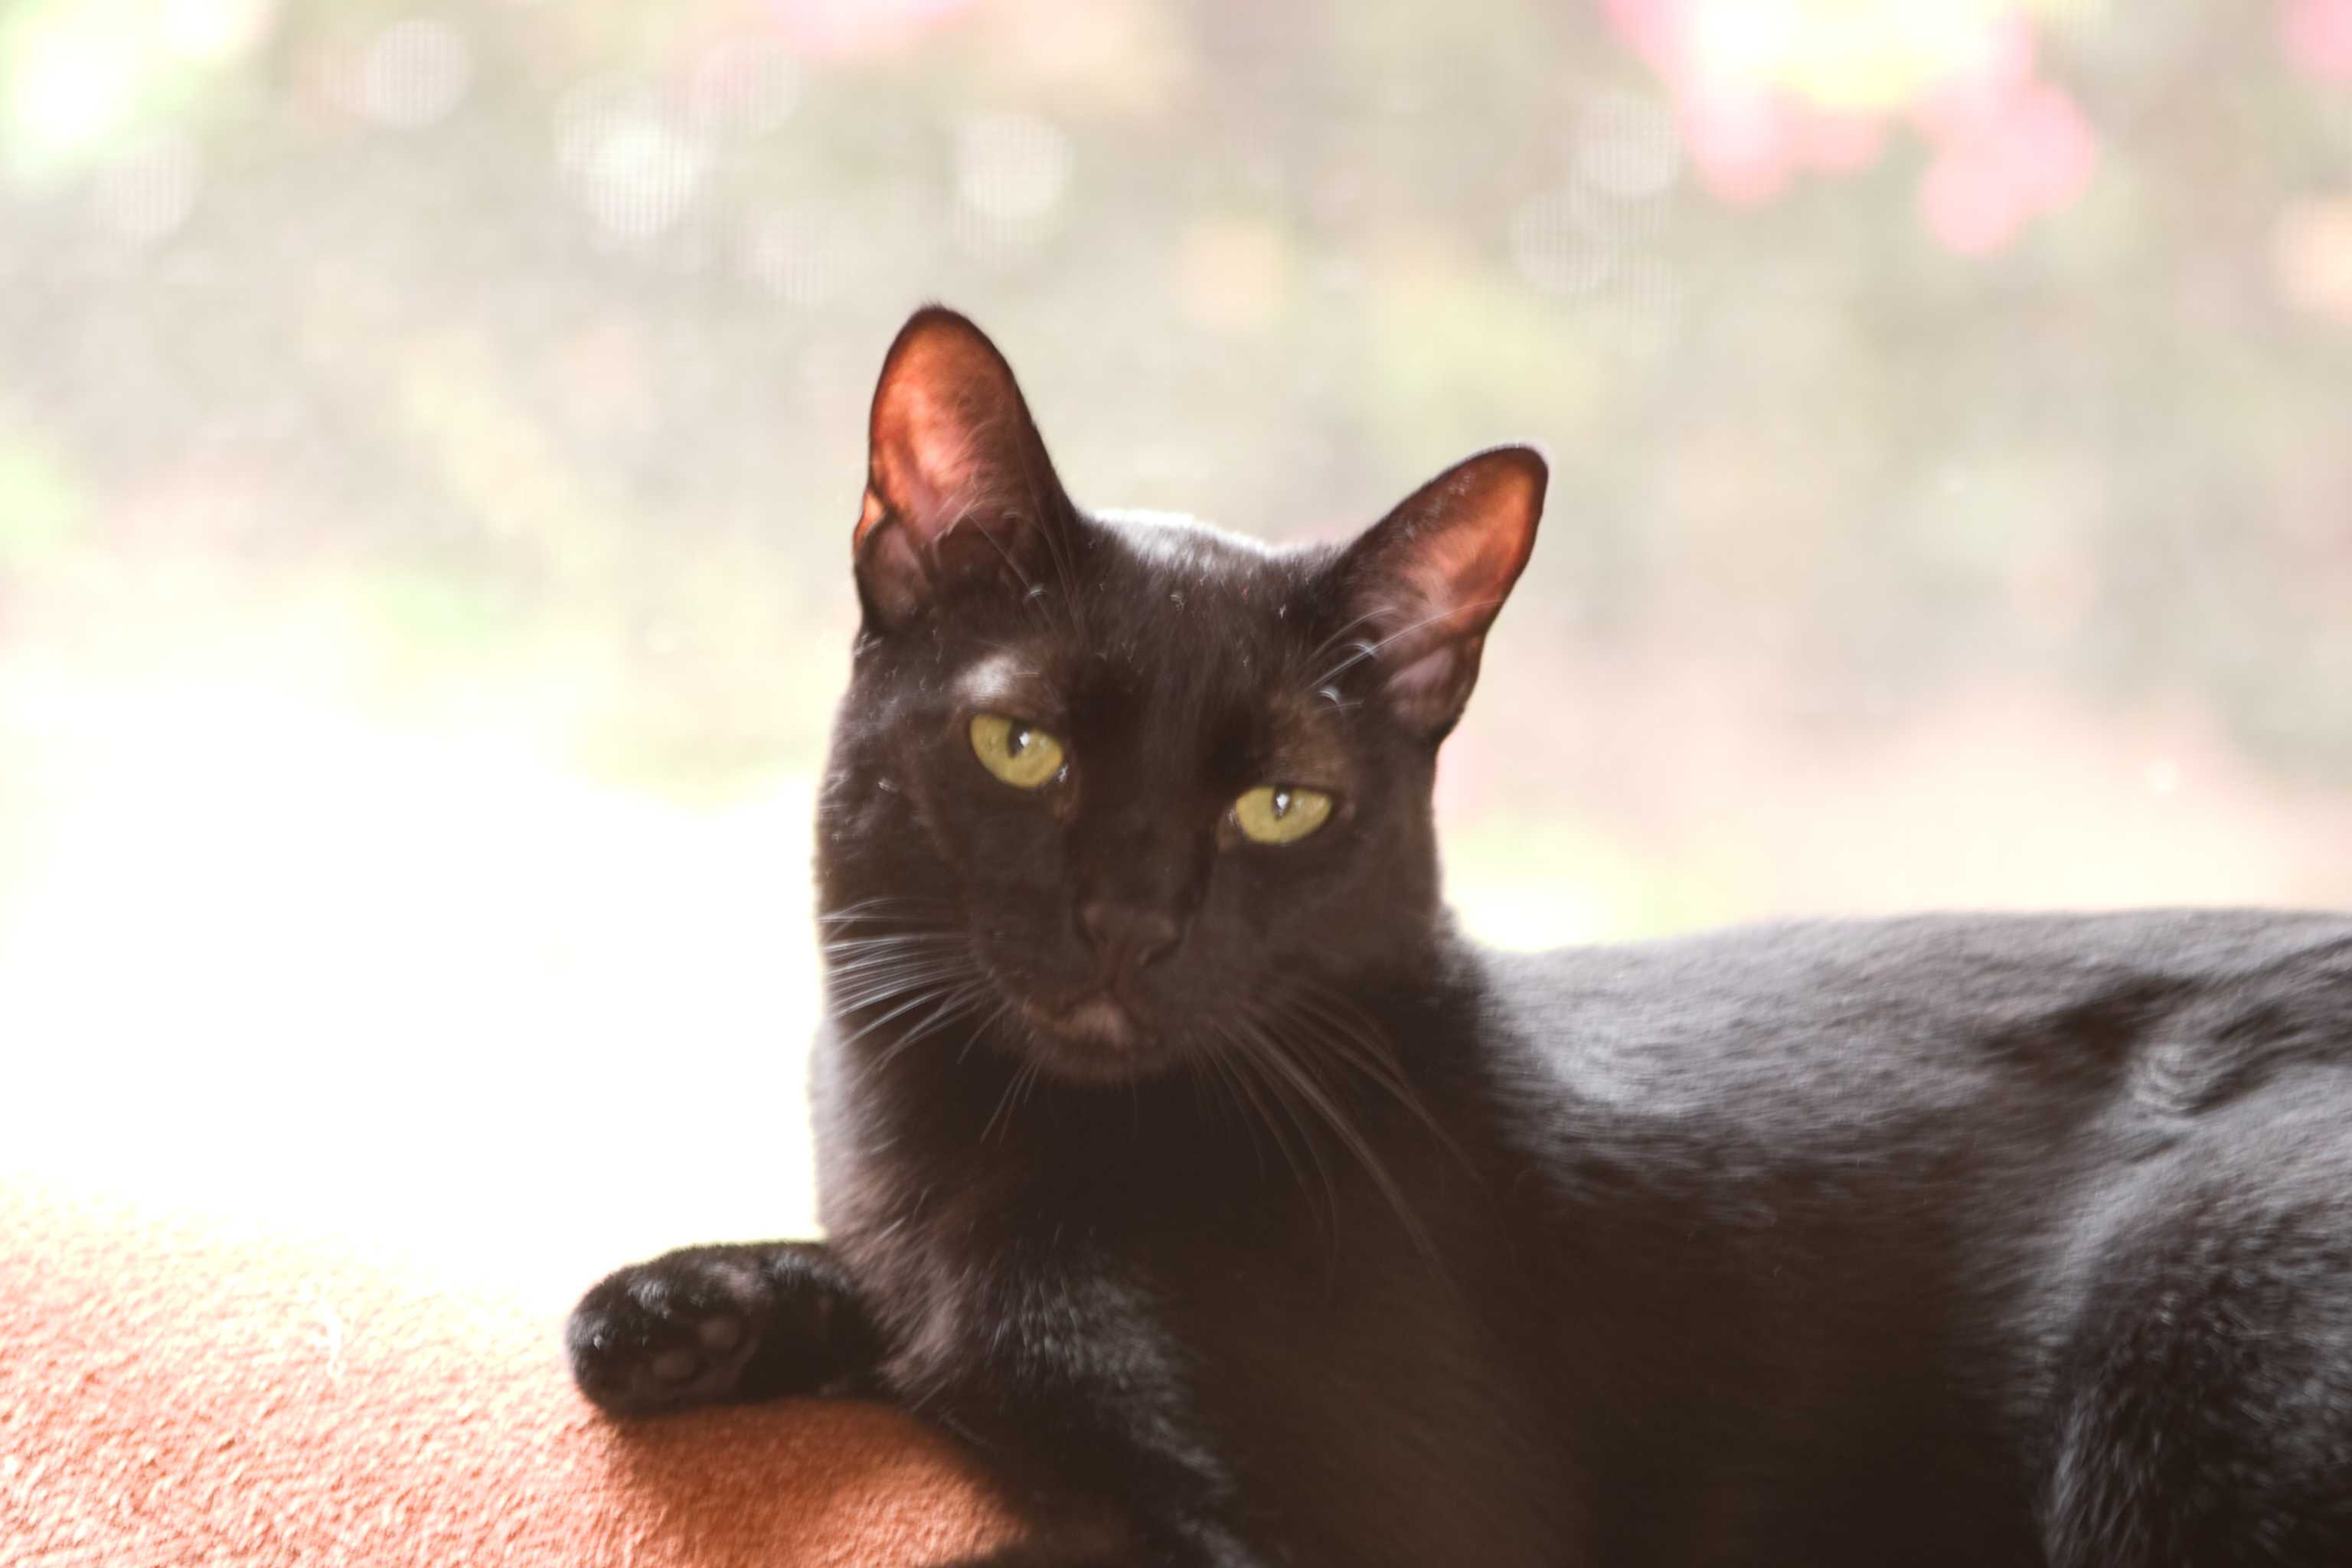 A cute black cat